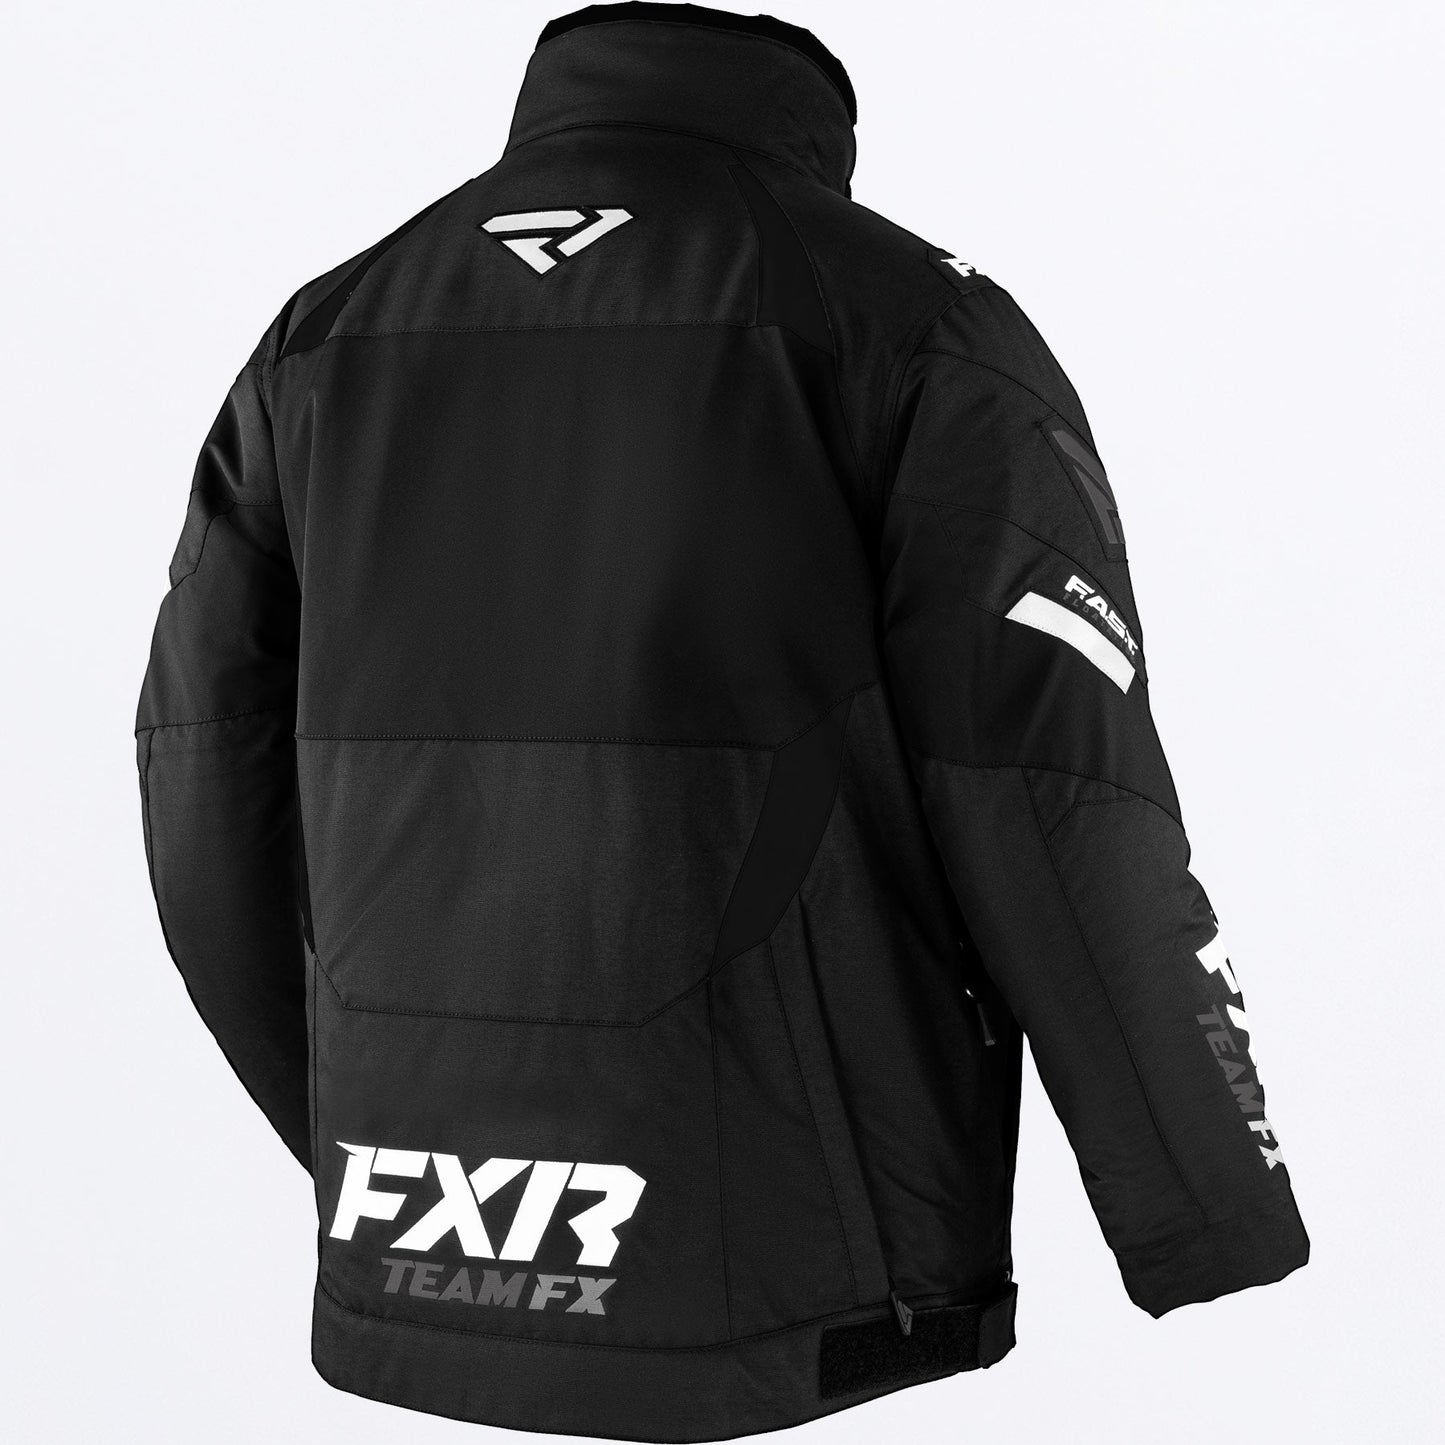 FXR Men's Team FX Jacket